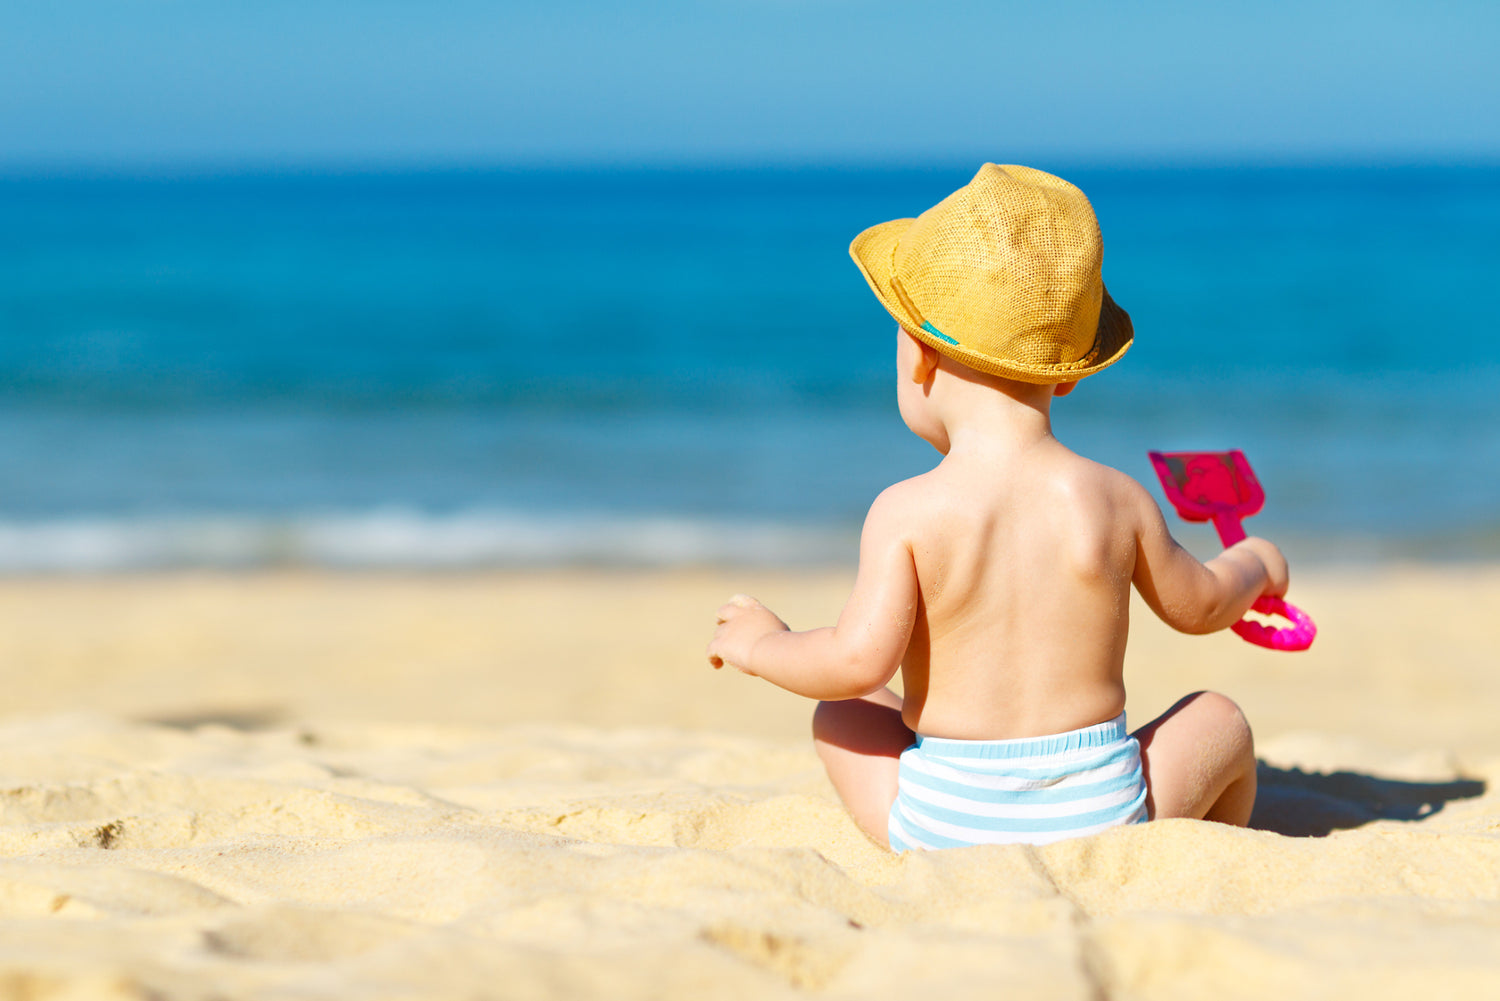 Sommeil de l'enfant en été : les conseils pour profiter des vacances